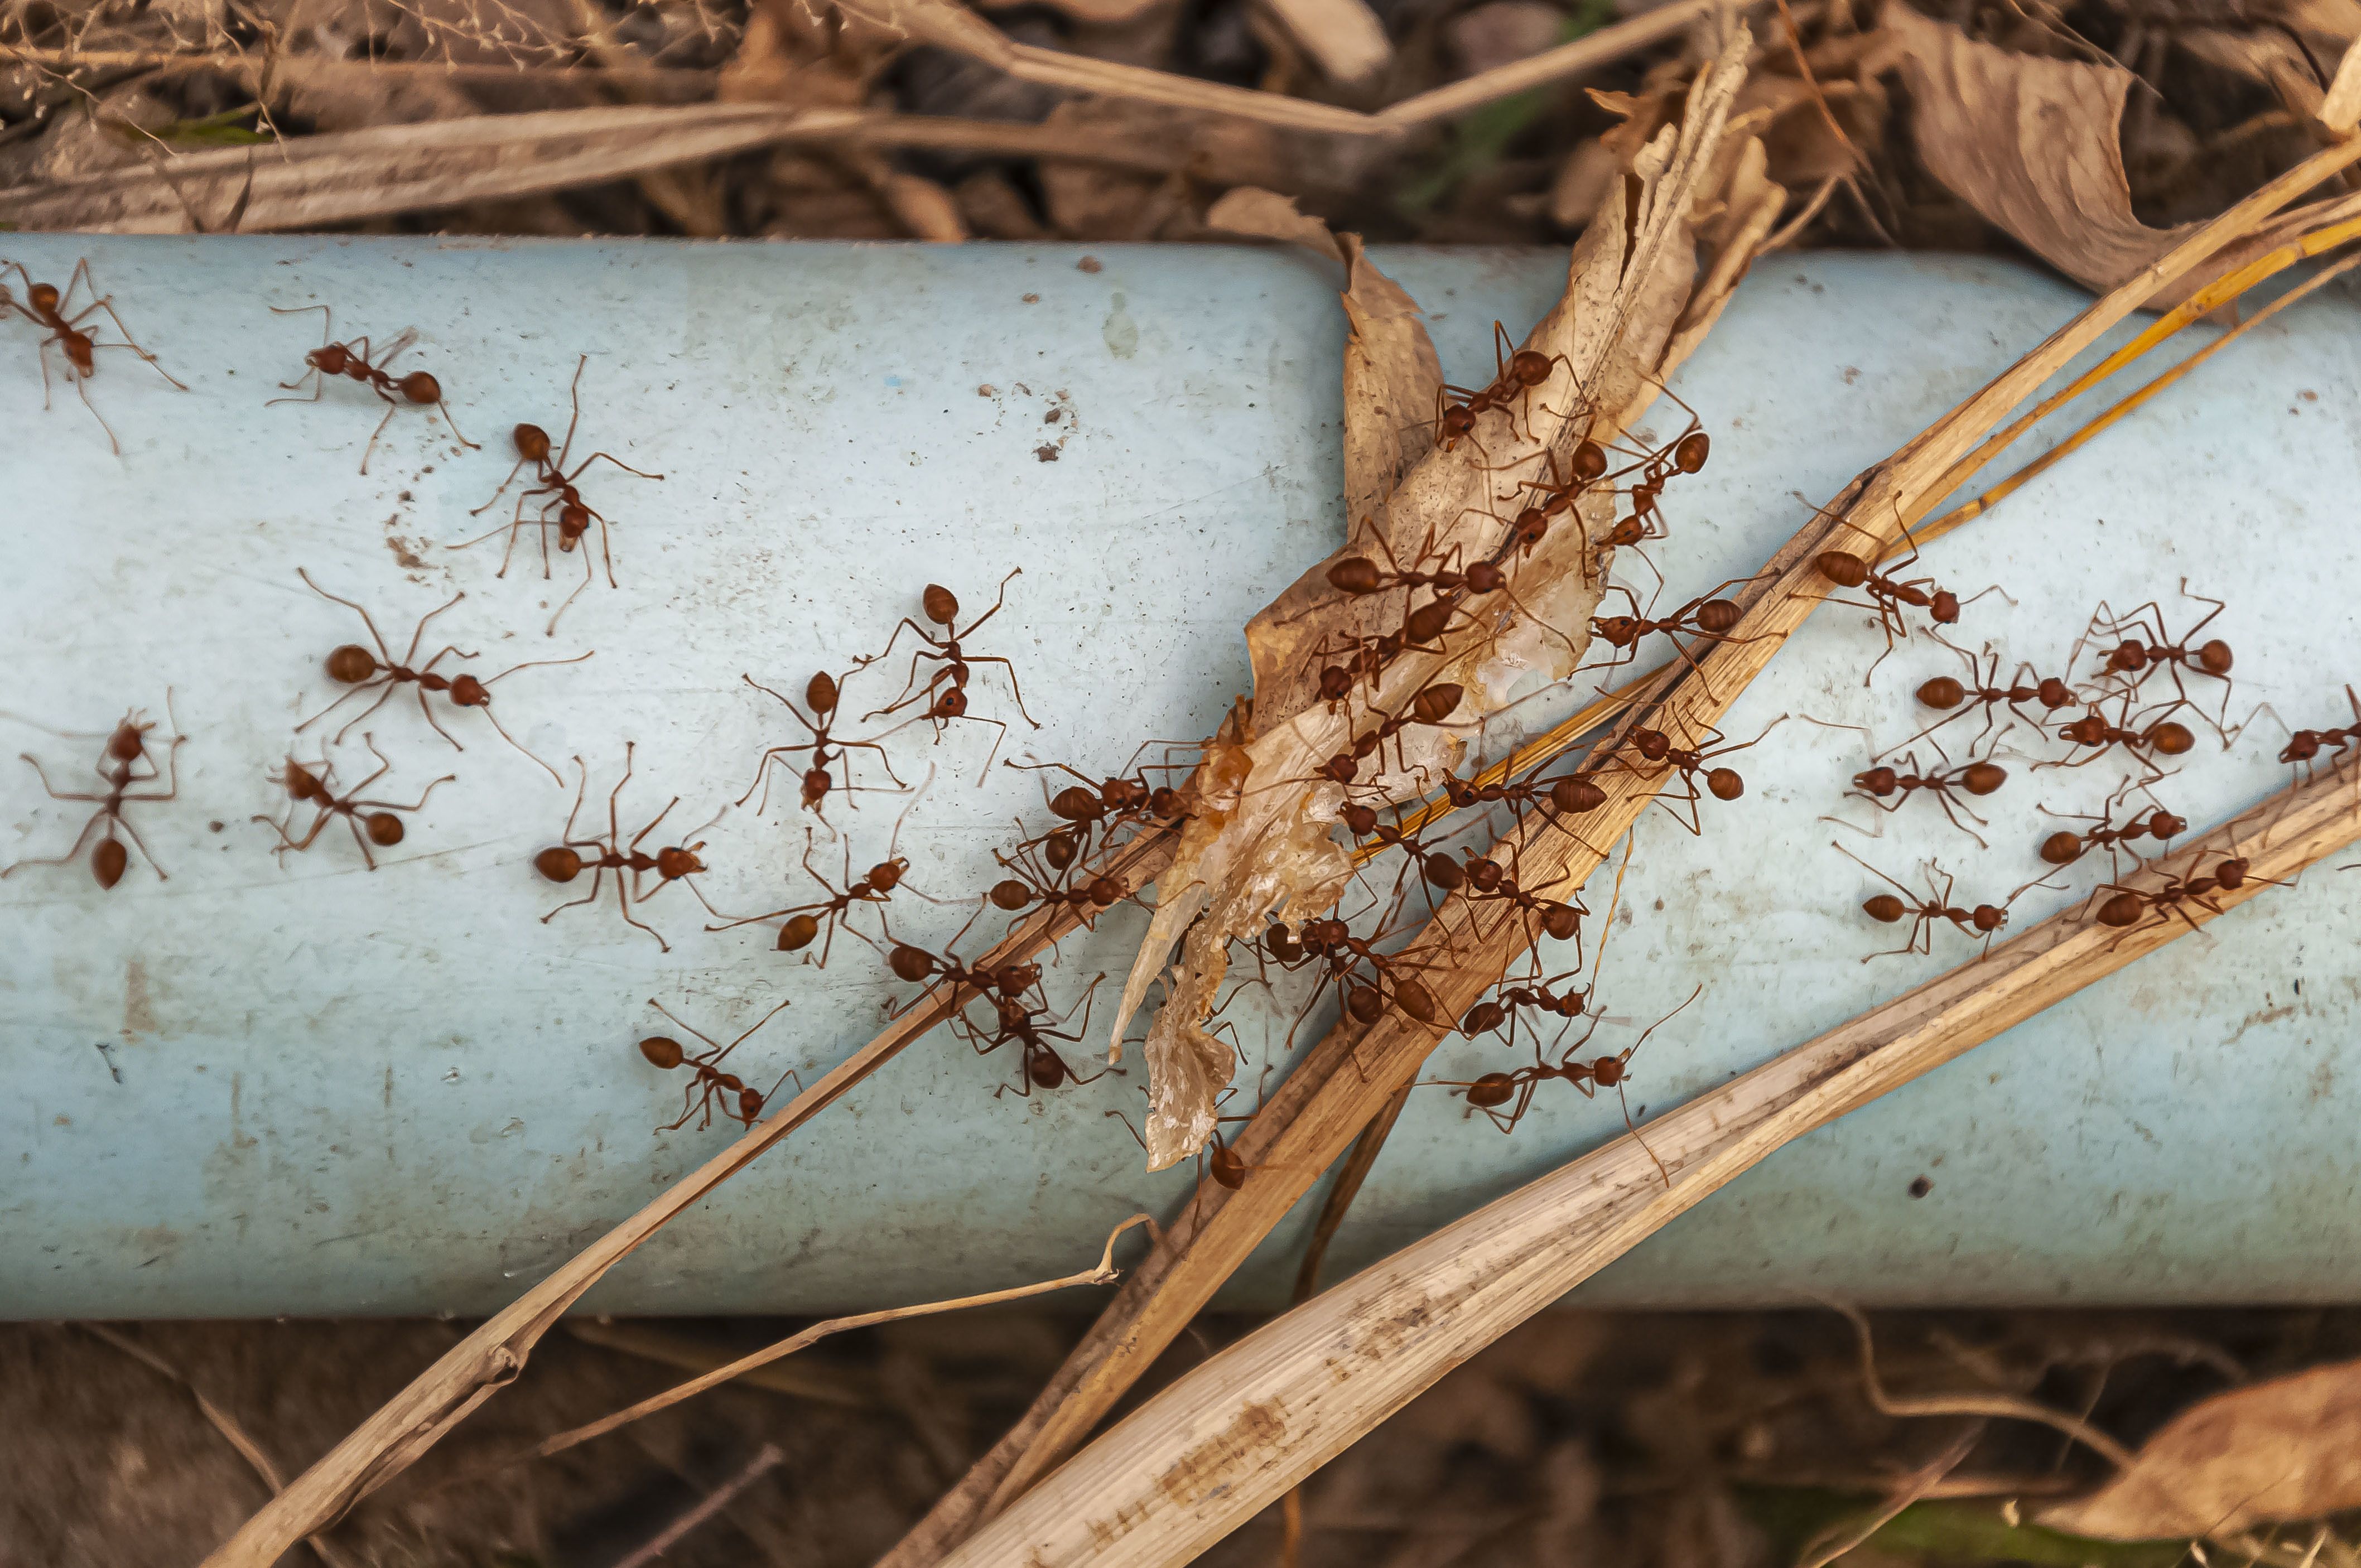 Las hormigas pueden sobrevivir debajo del agua? - Anticimex